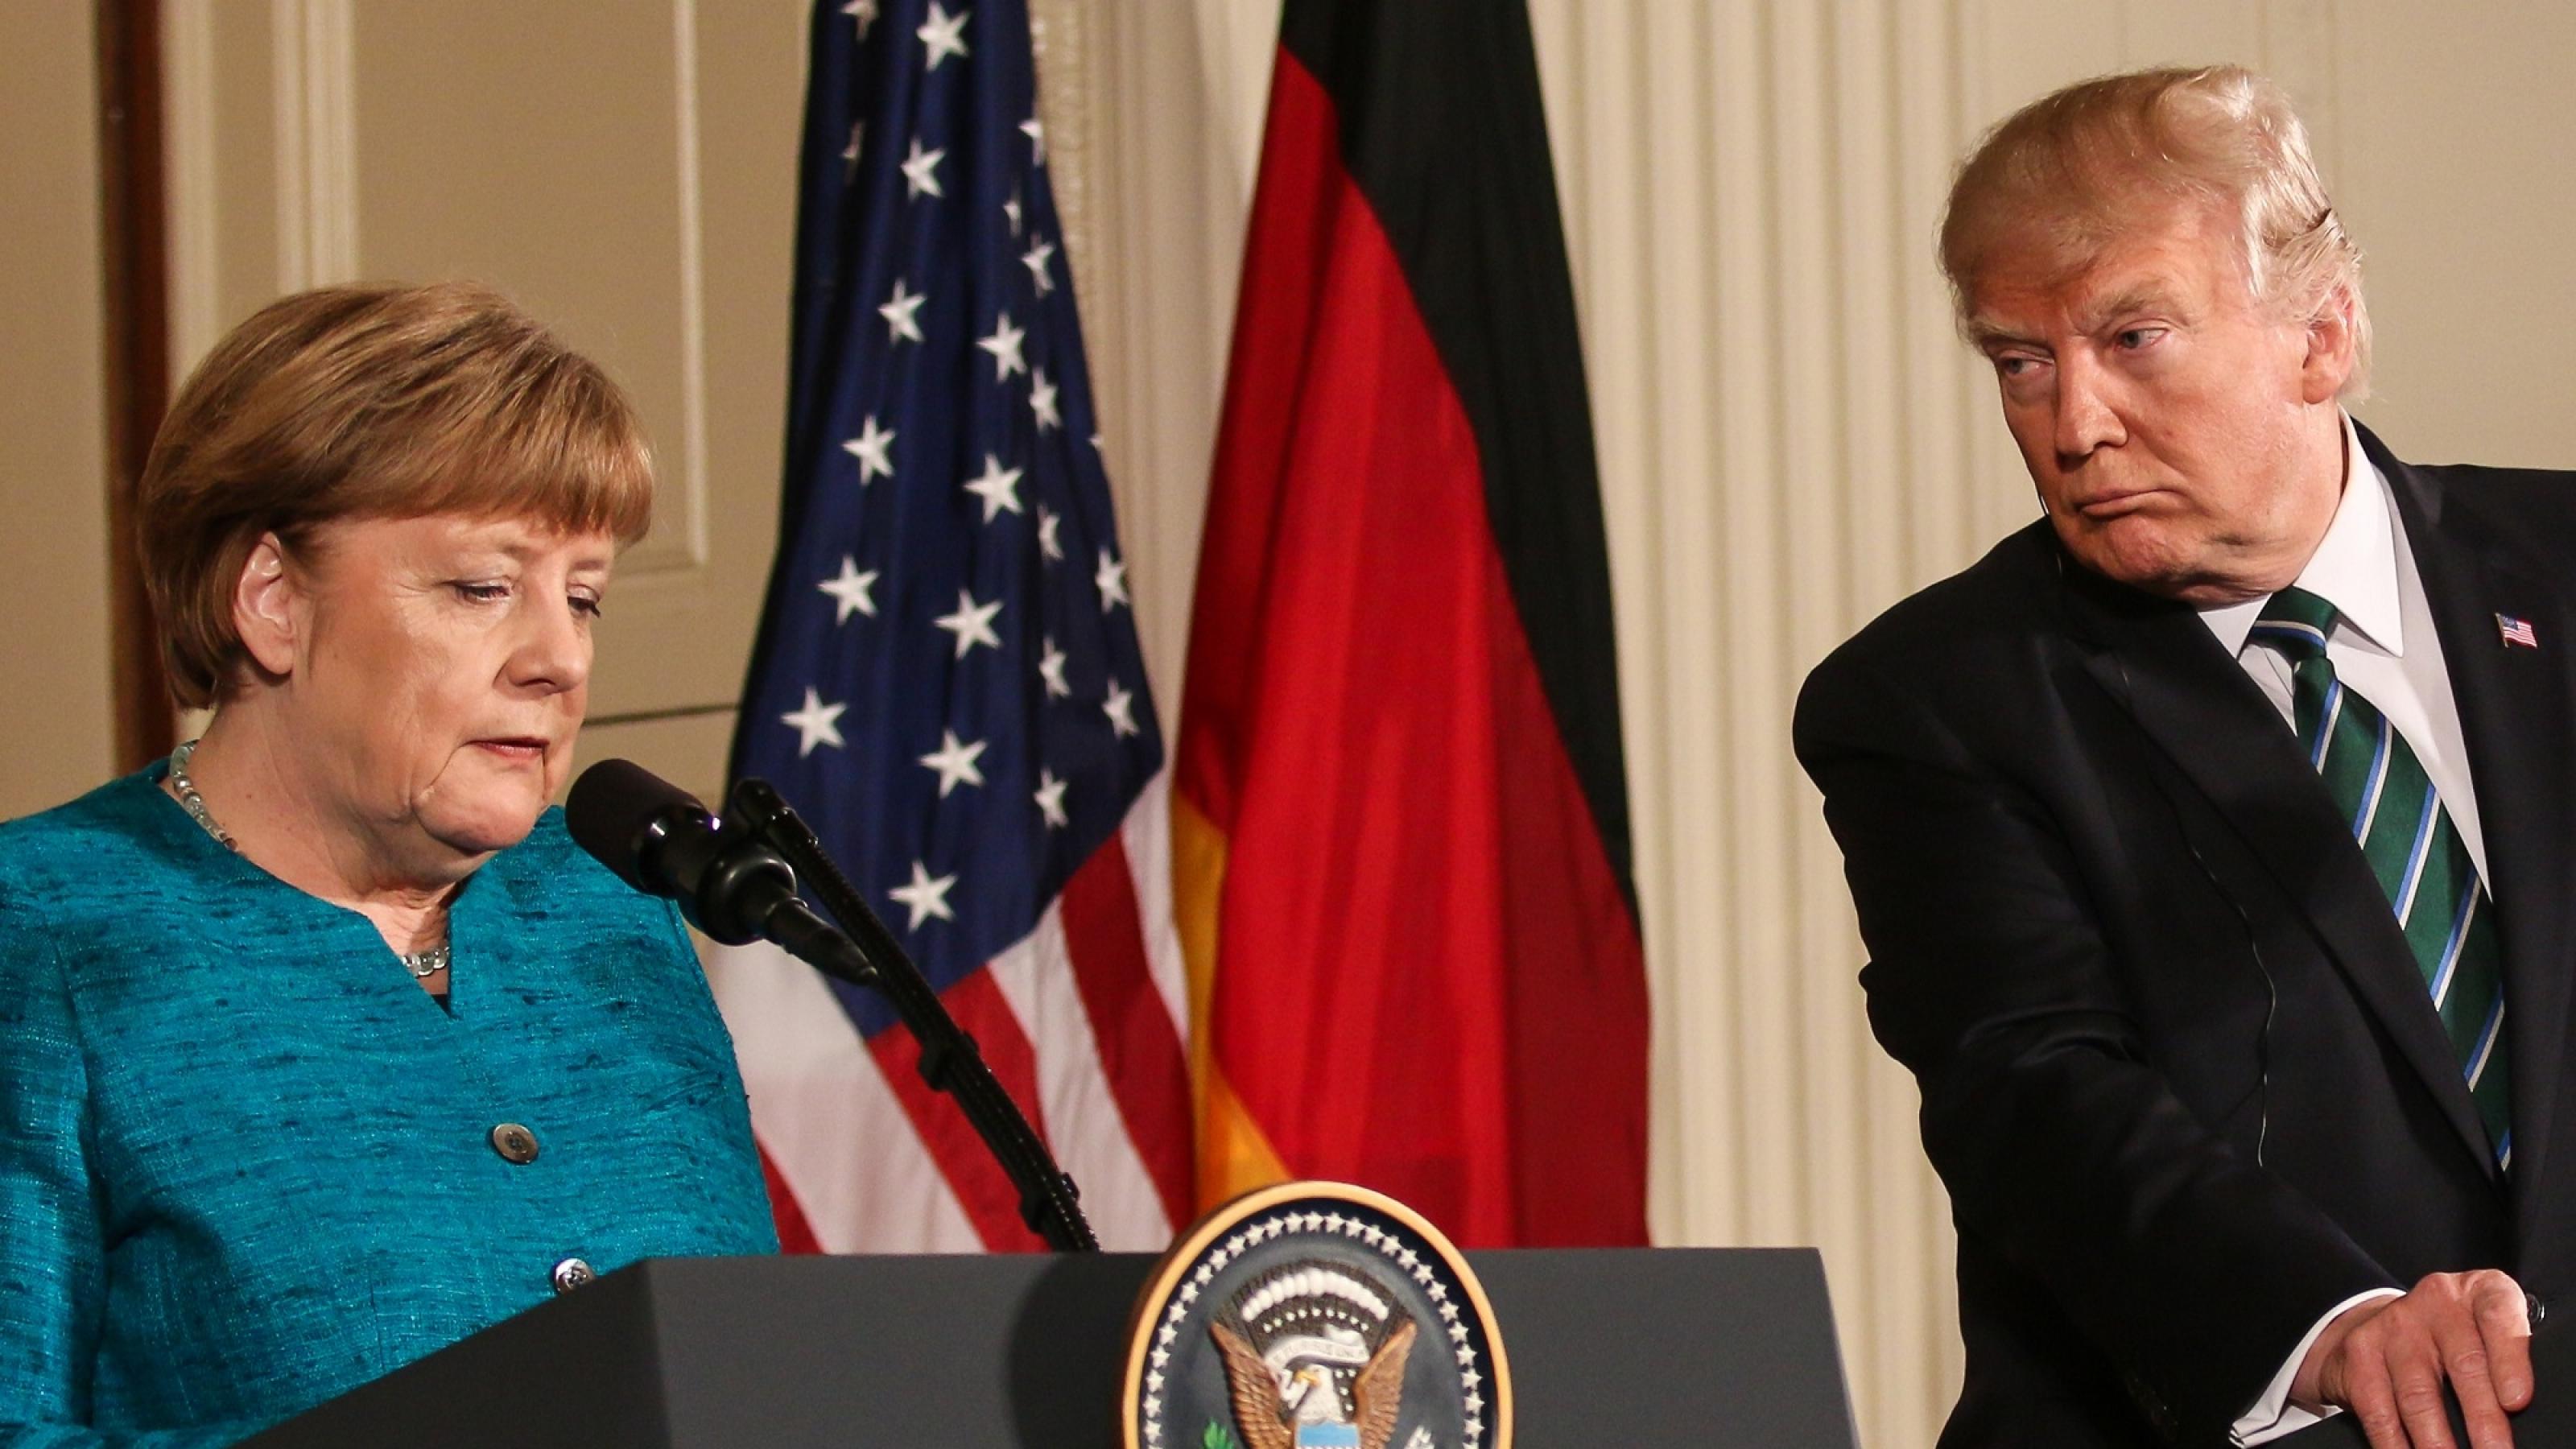 Angela Merkel und Donald Trump stehen nebeneinander bei einer Pressekonferenz. Trump schaut Merkel skeptisch an.